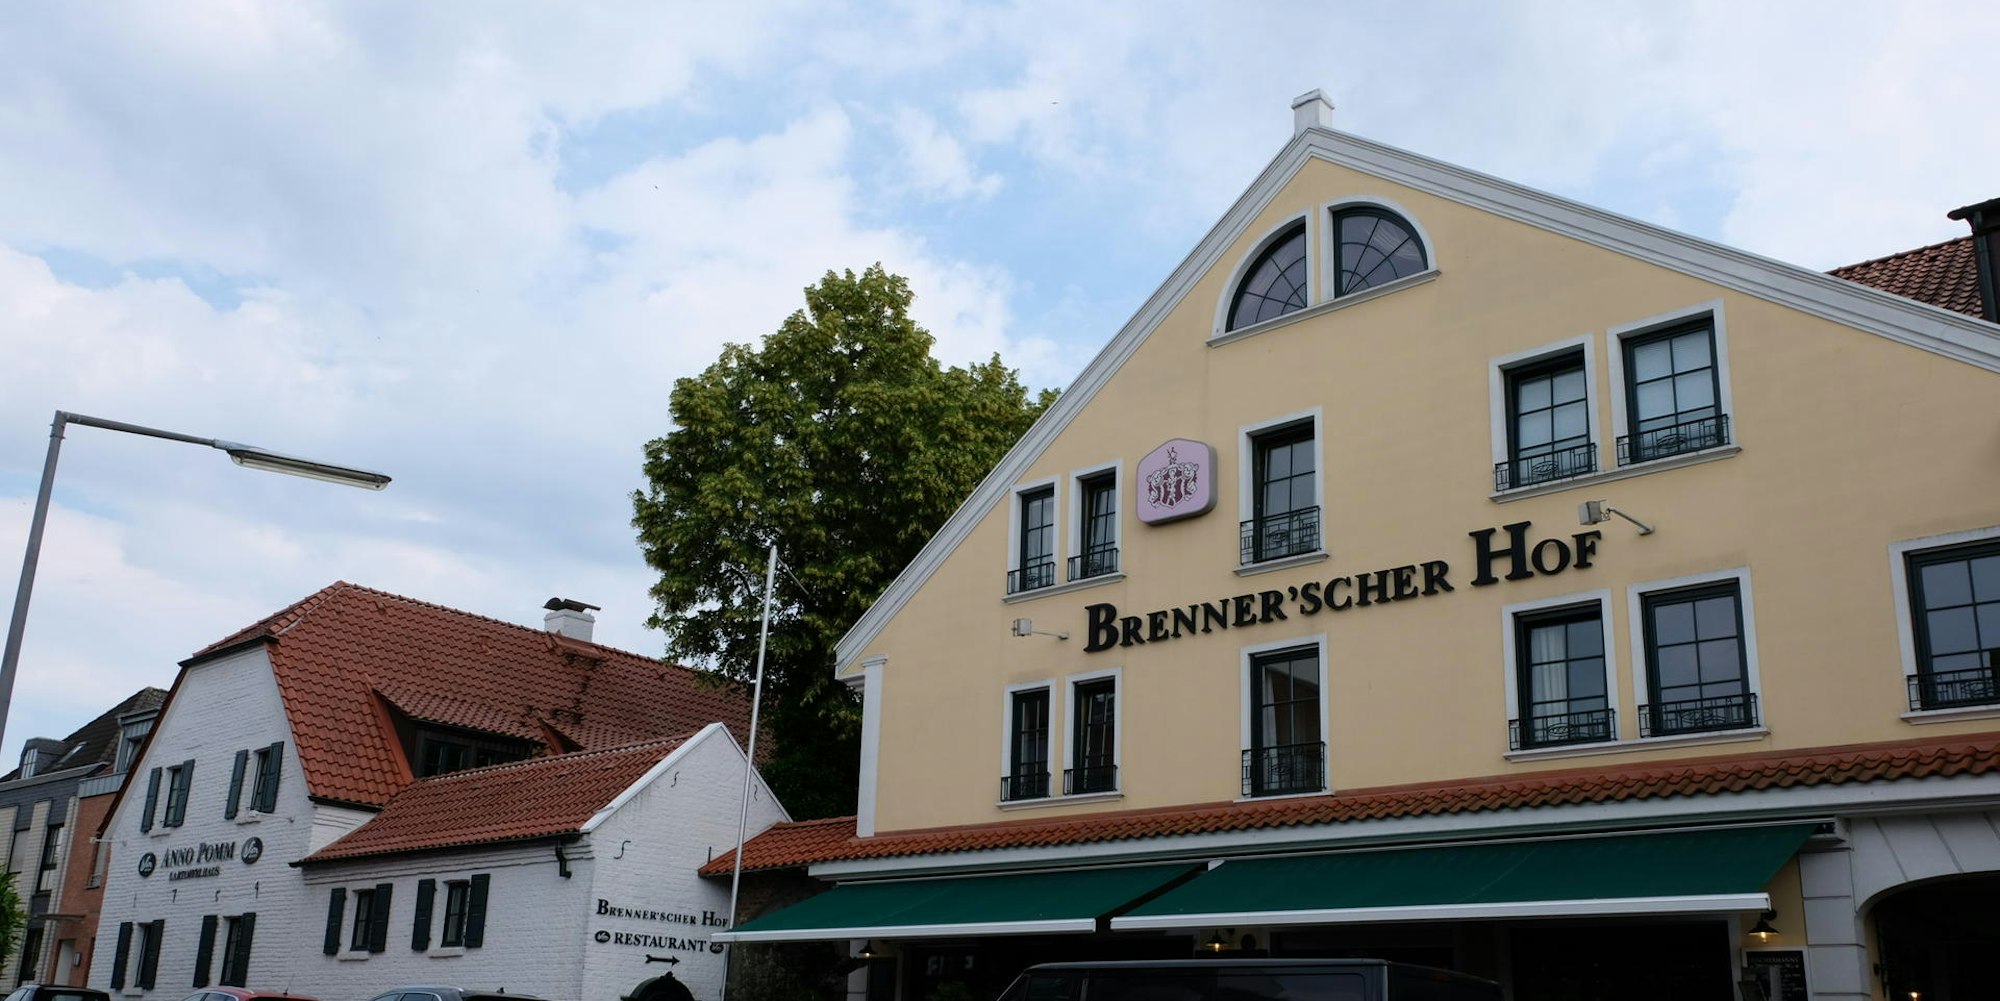 Brennescher Hof